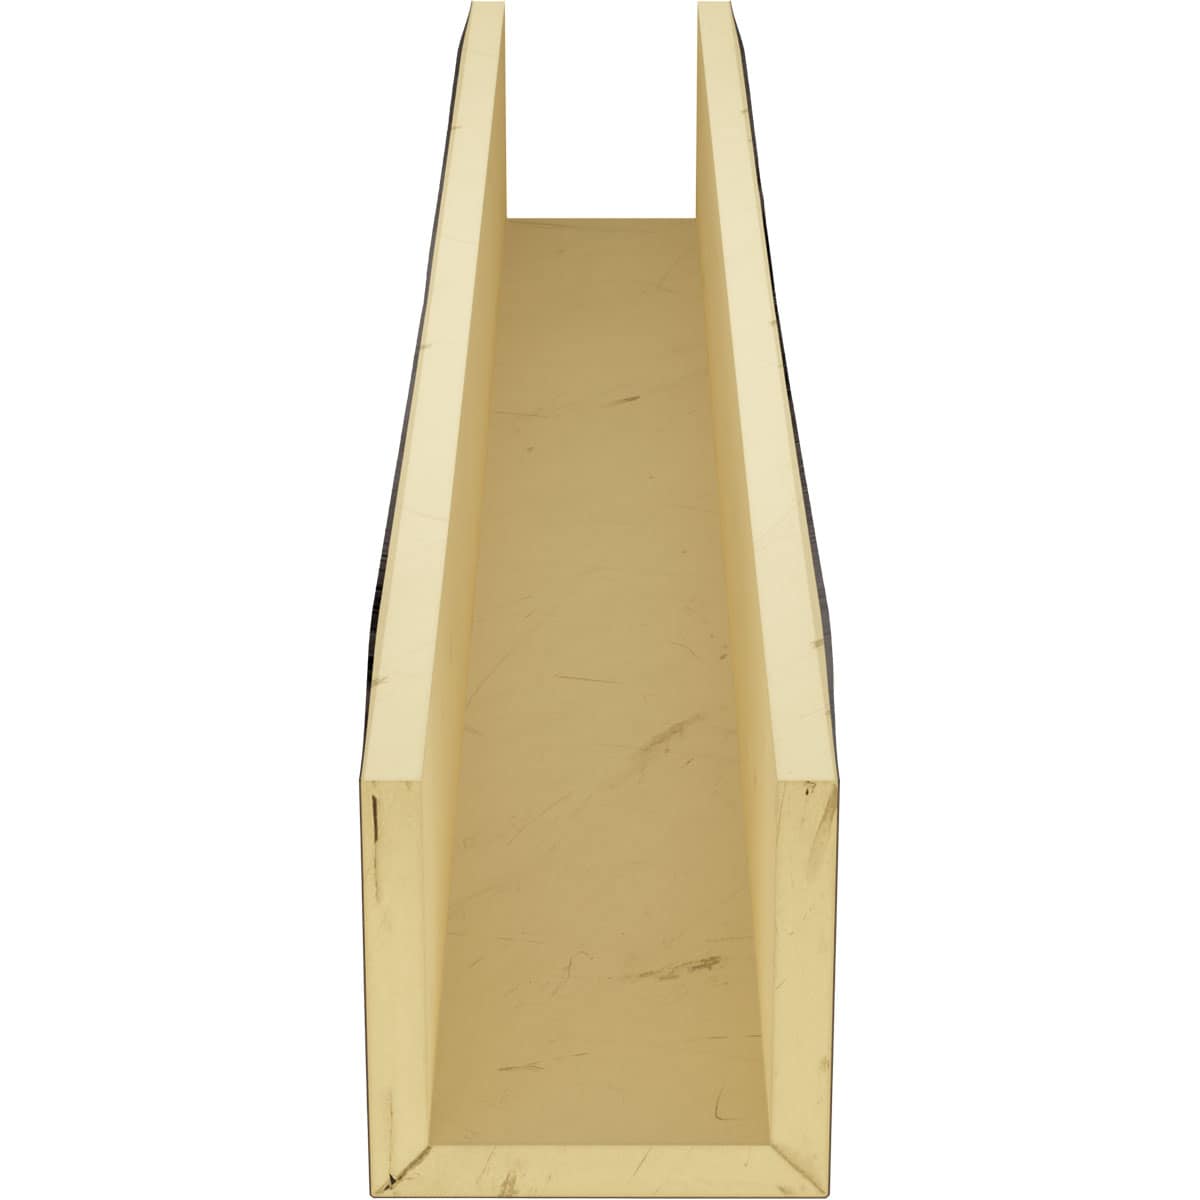 Cosca Viga de poliuretano – Vigas decorativas (DB120-6 – roble antracita  120 x 120 mm) réplica fiel de la estructura de madera, estable y muy ligero  –